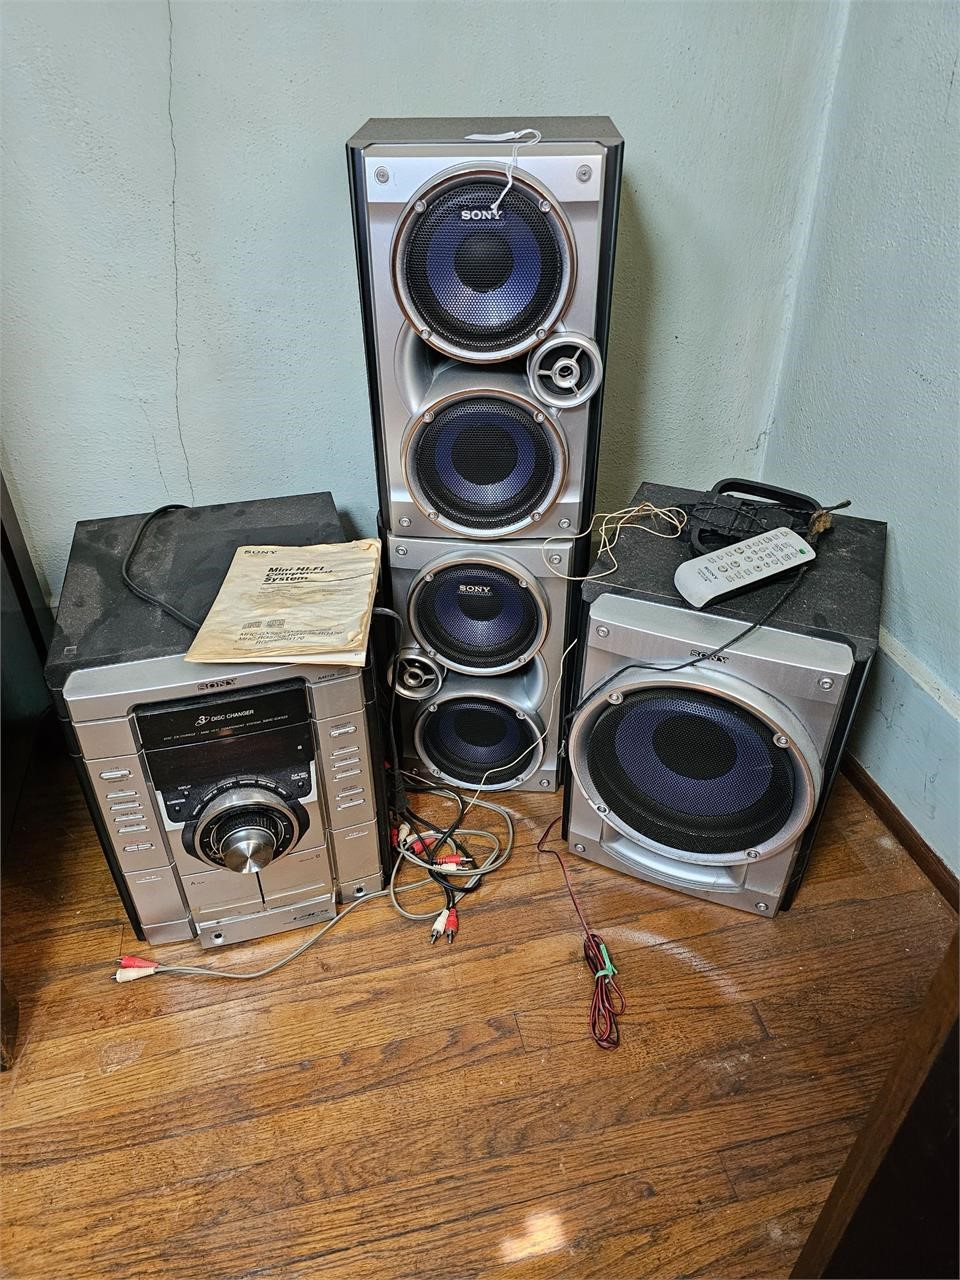 Sonny Stereo CD/Cassette, Speakers Sub Woofer